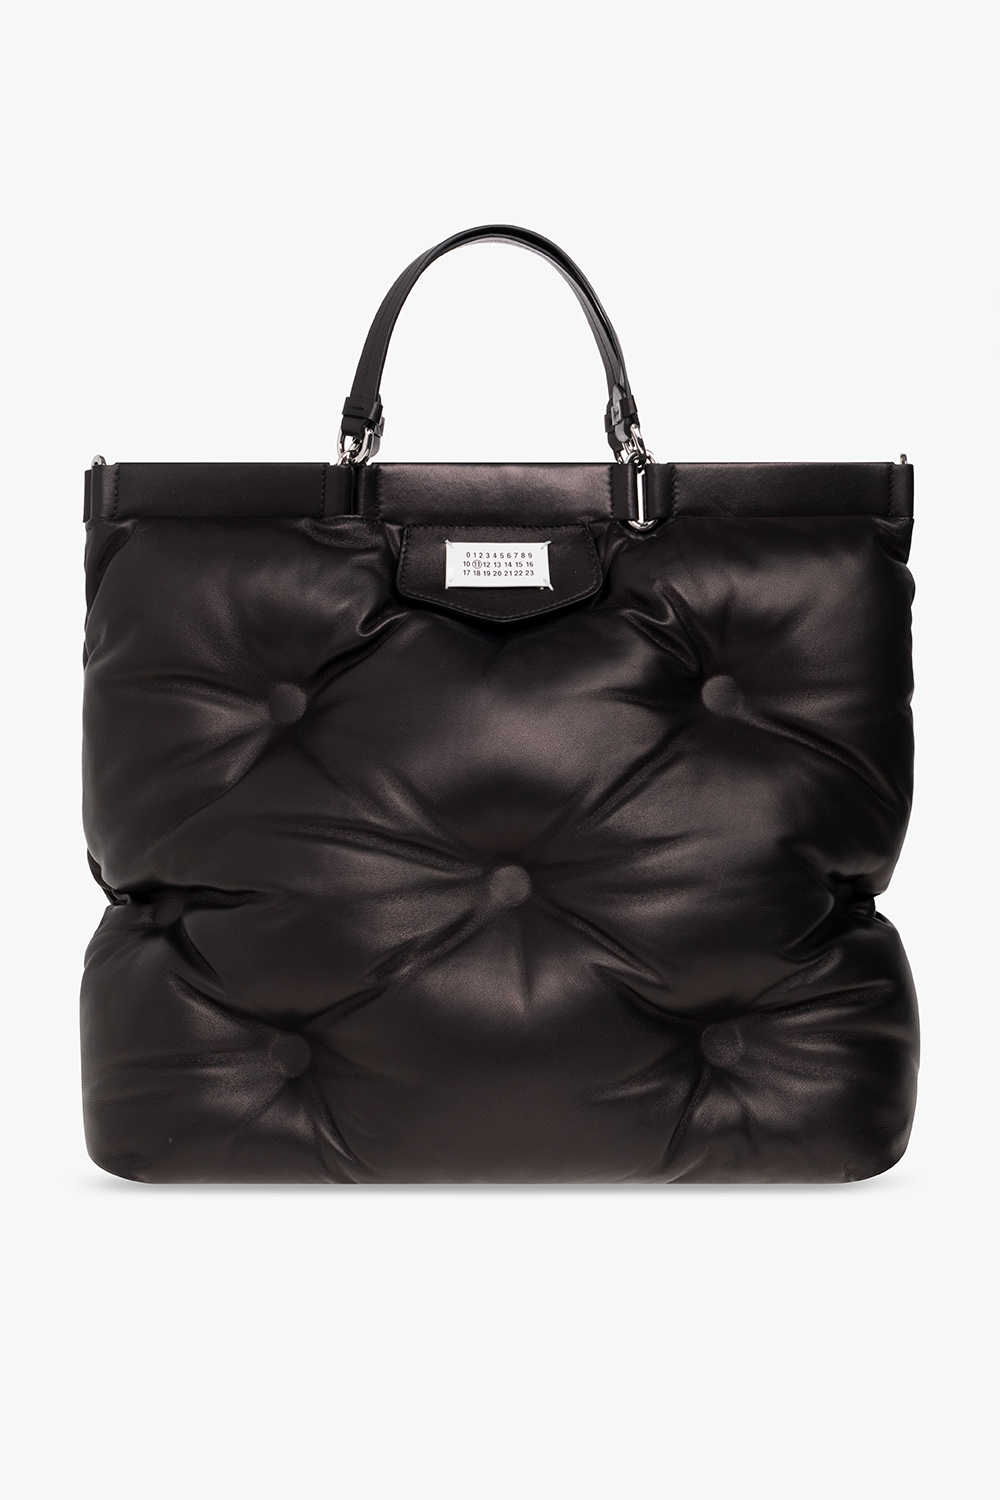 Maison Margiela ‘Glam Slam Shopping Large’ shoulder bag